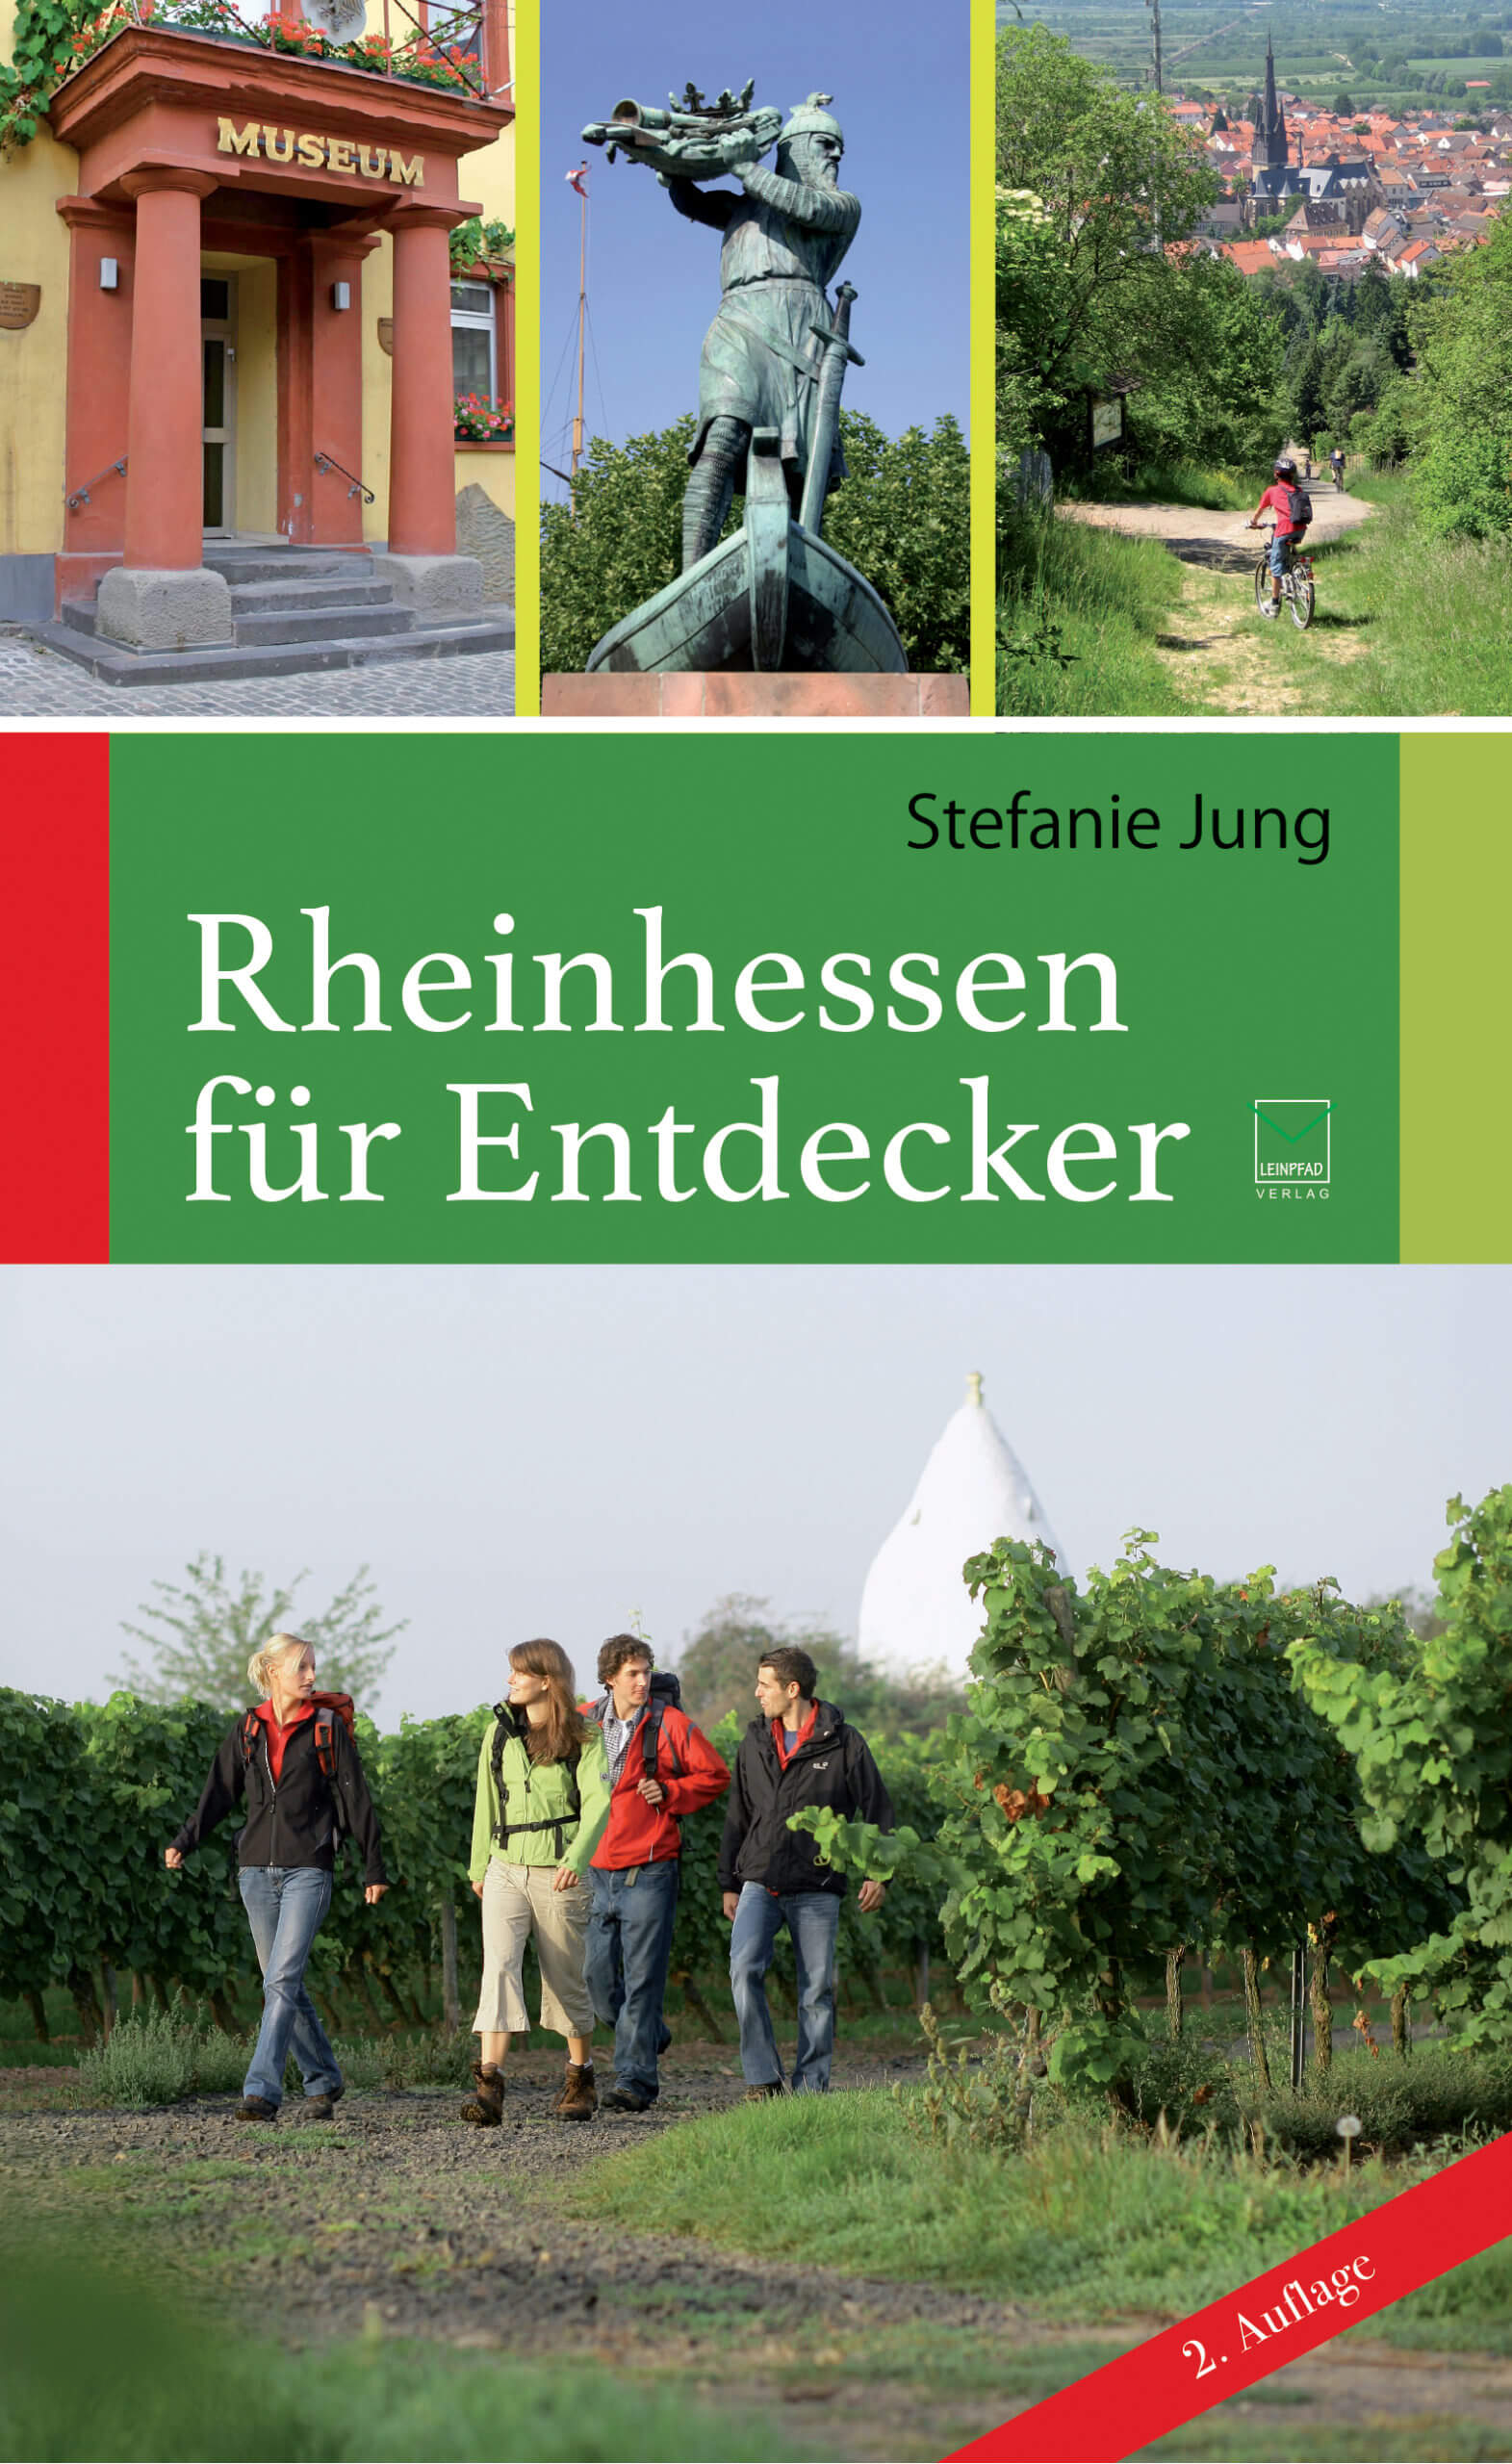 Cover des Buches "Rheinhessen für Entdecker"